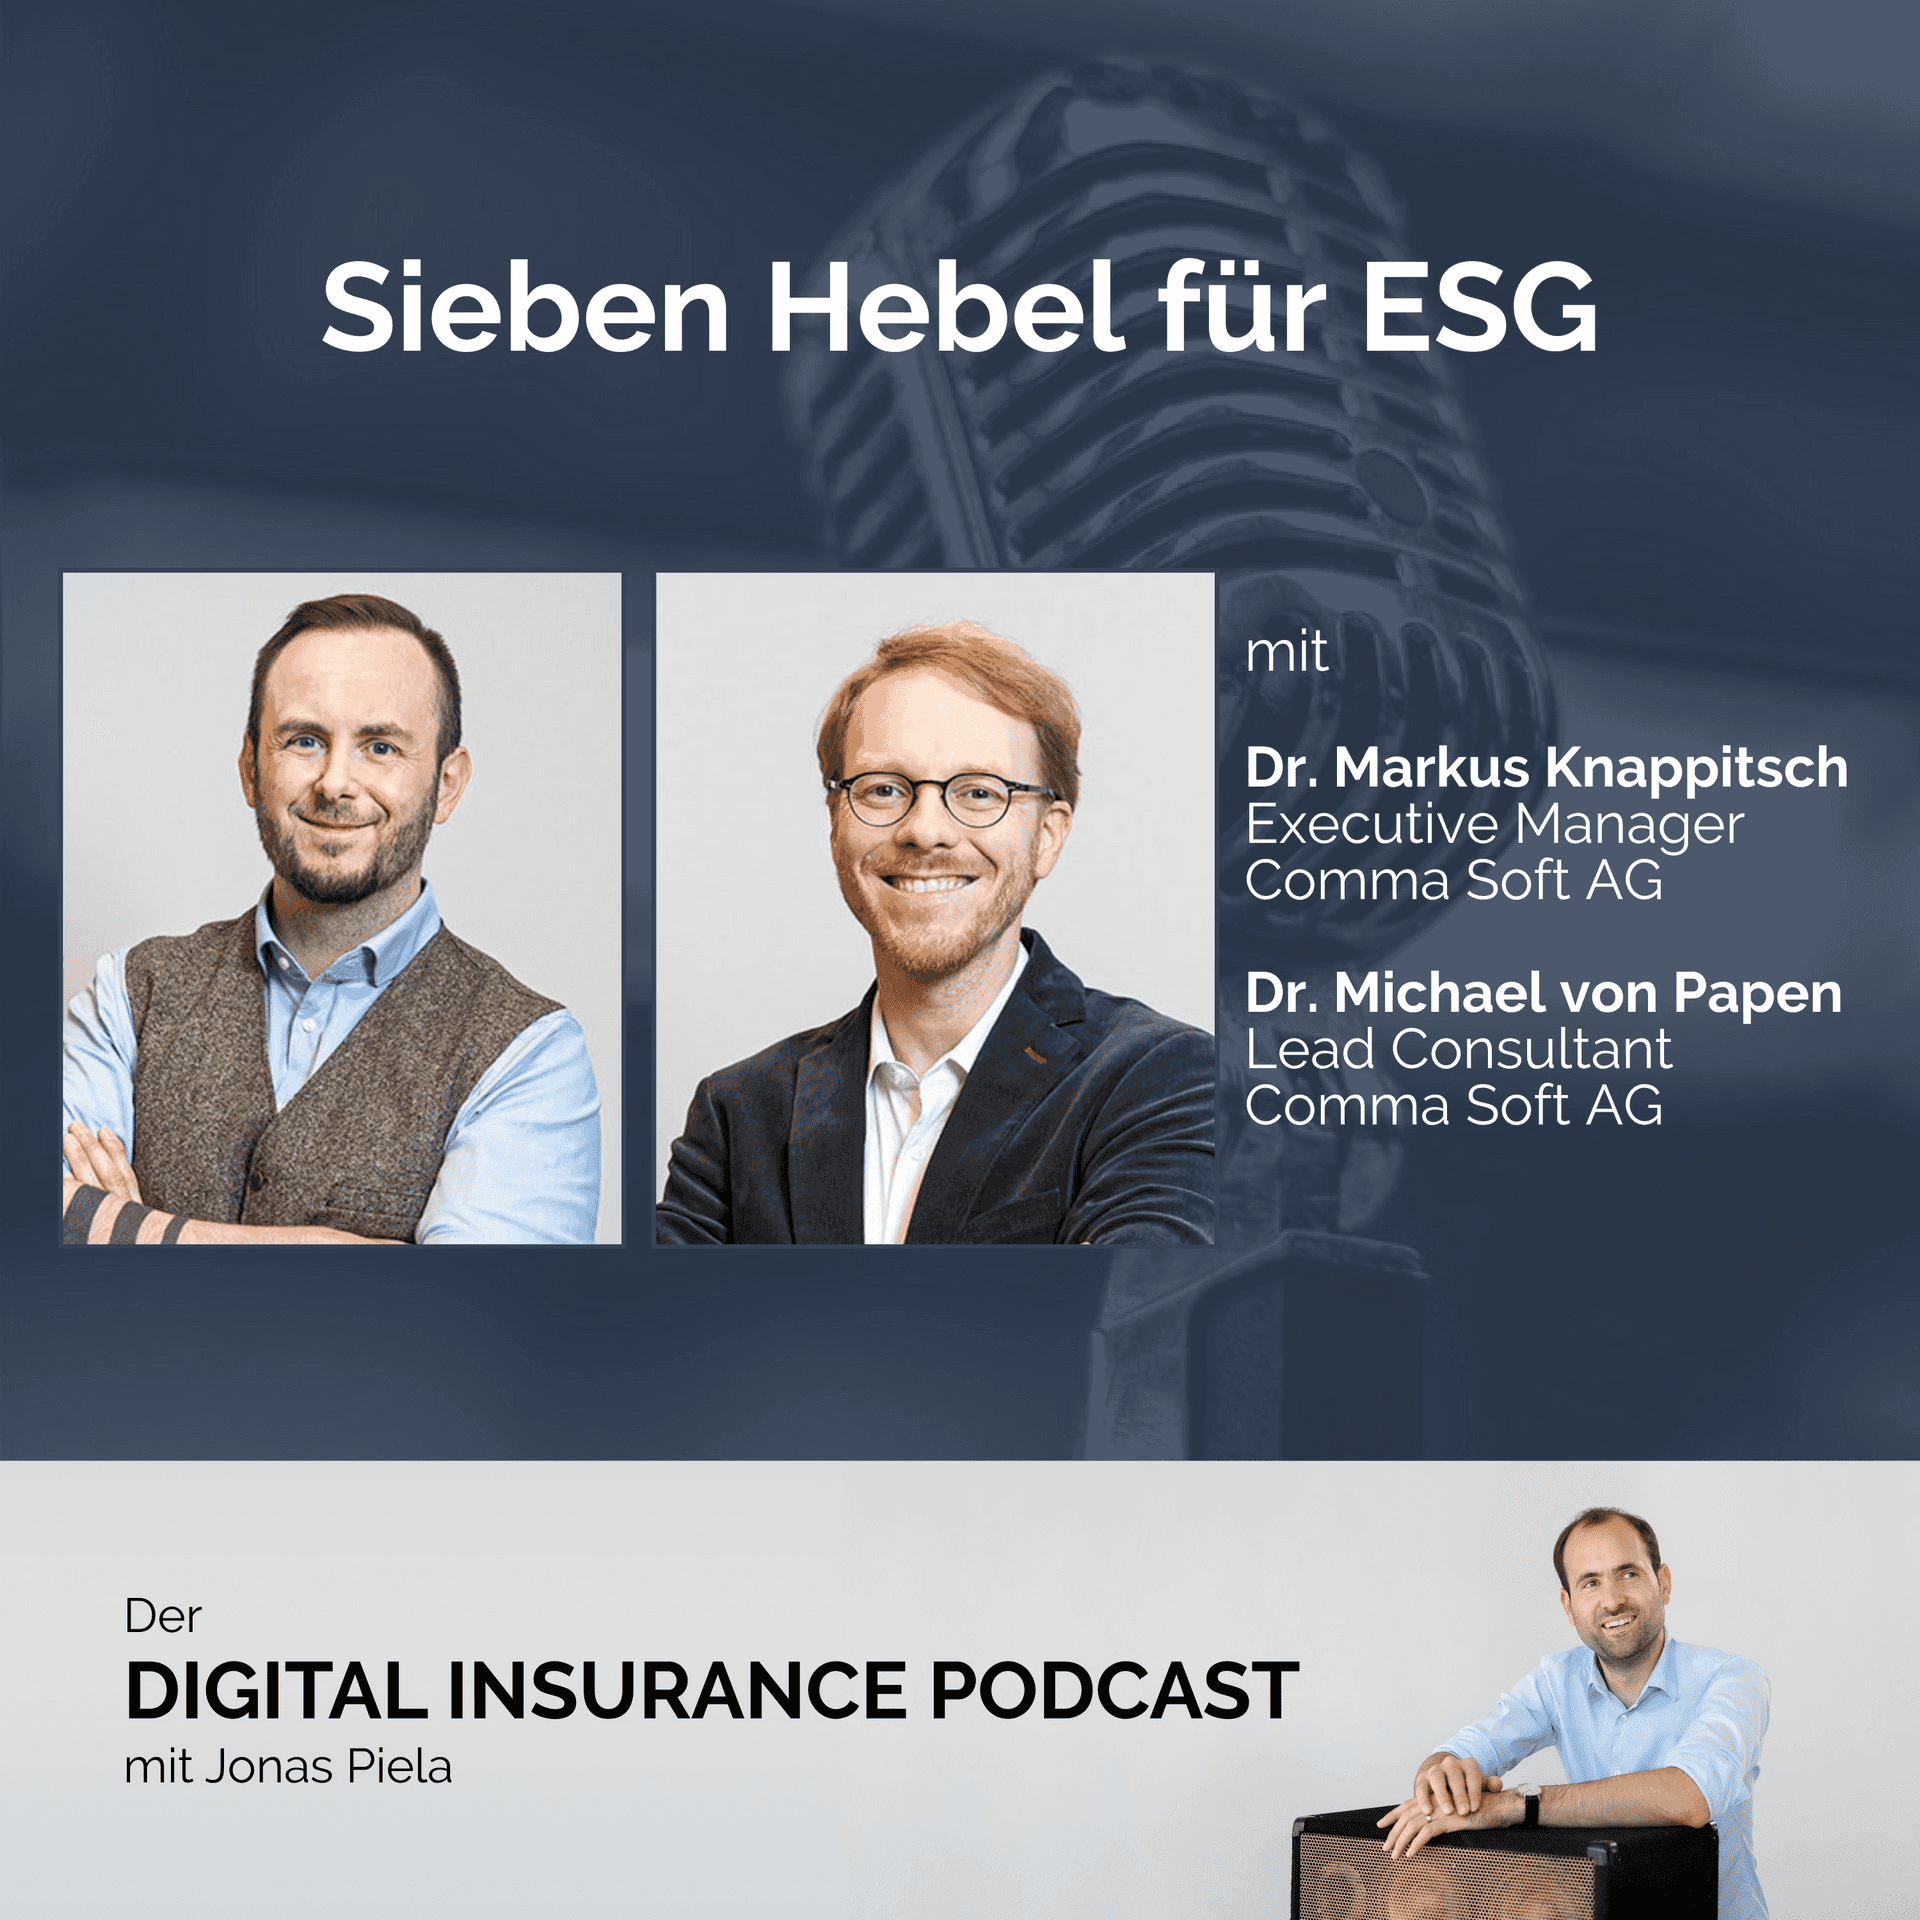 Sieben Hebel für ESG mit Dr. Markus Knappitsch und Dr. Michael von Papen